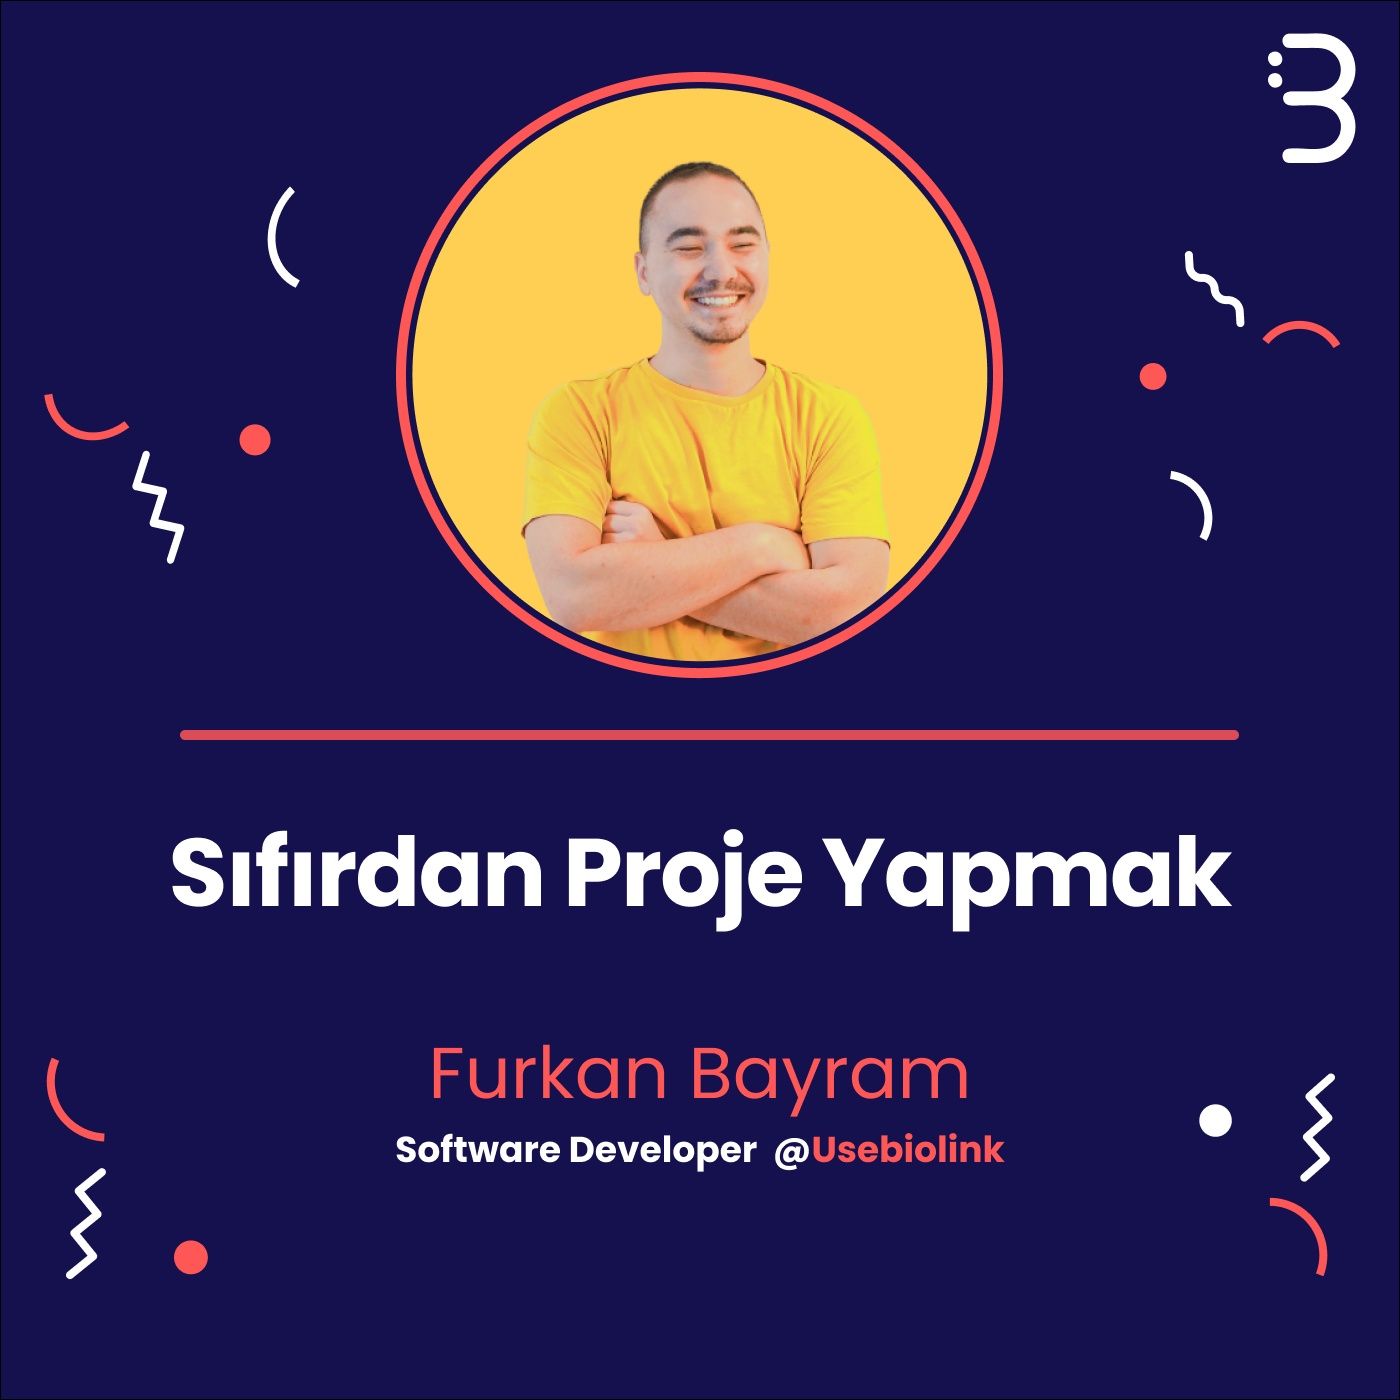 Teknik: Furkan Bayram | Usebiolink | Sıfırdan Proje Yapmak